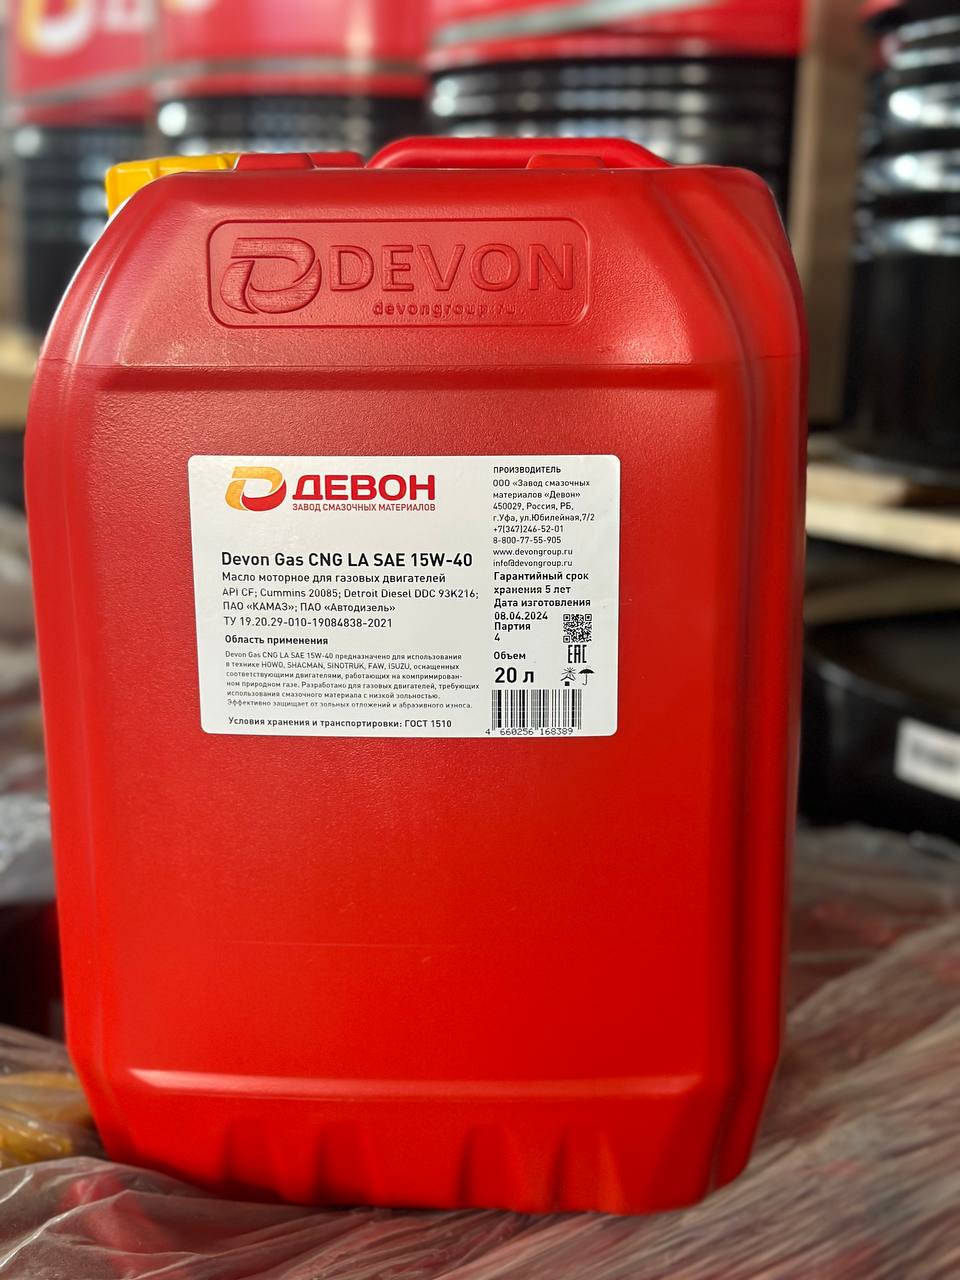 DEVON Gas CNG LA SAE 15W-40 - Всесезонные малозольные моторные масла для современной коммерческой техники, работающей на сжатом природном газе CNG (метане)